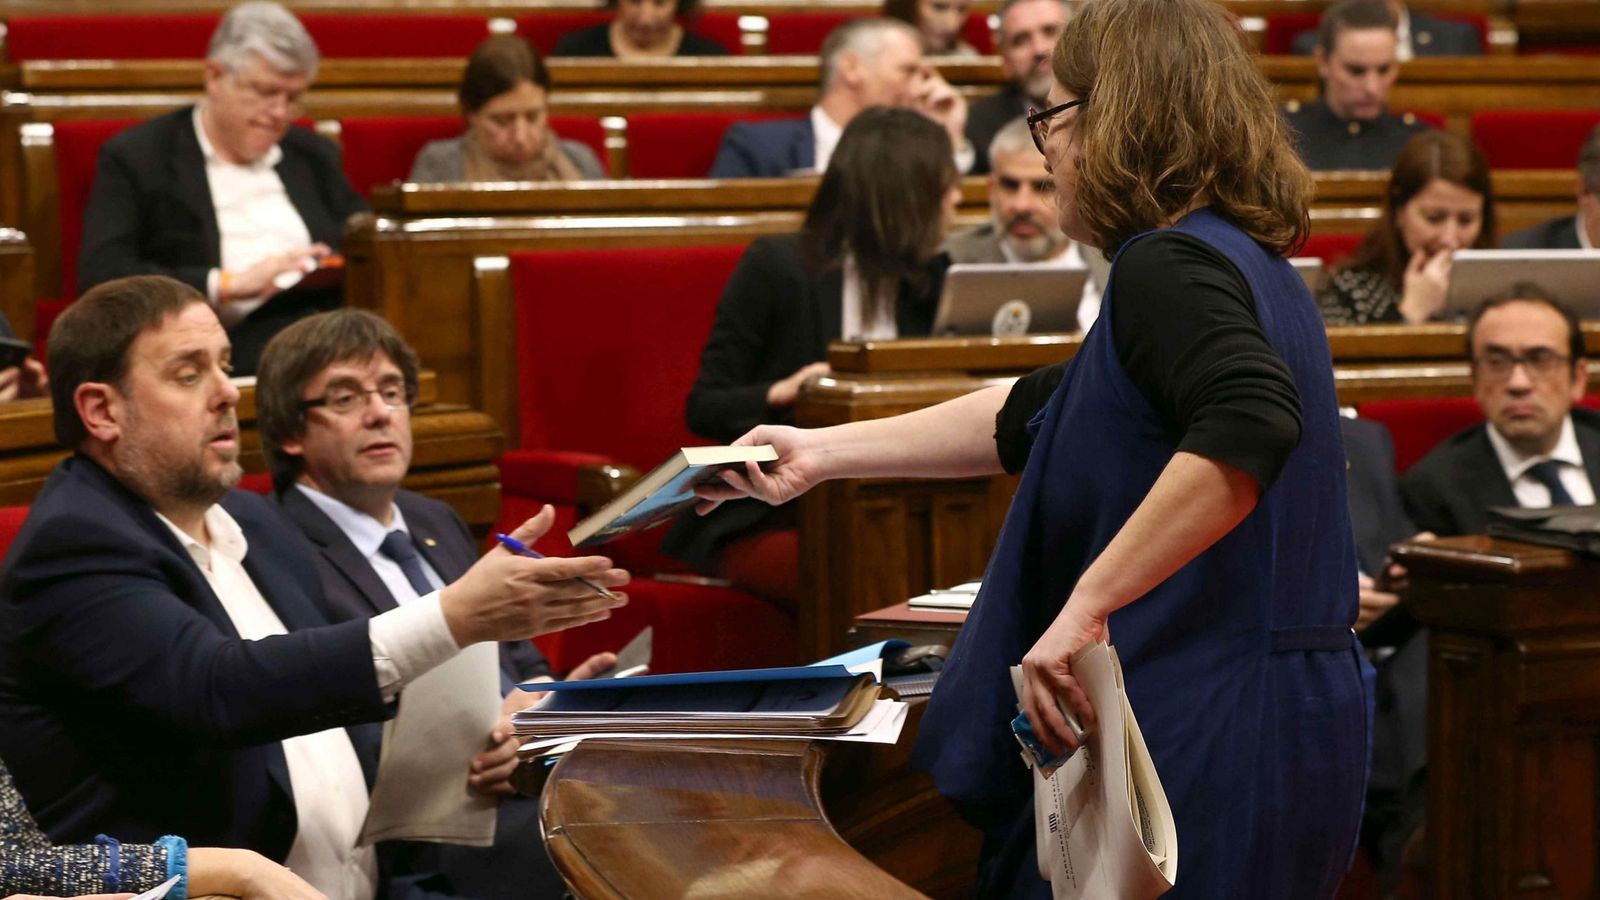 Foto: La diputada de la CUP Euilàlia Reguant le regala un libro al vicepresidente, Oriol Junqueras, durante el debate sobre los presupuestos en el Parlament. (EFE)